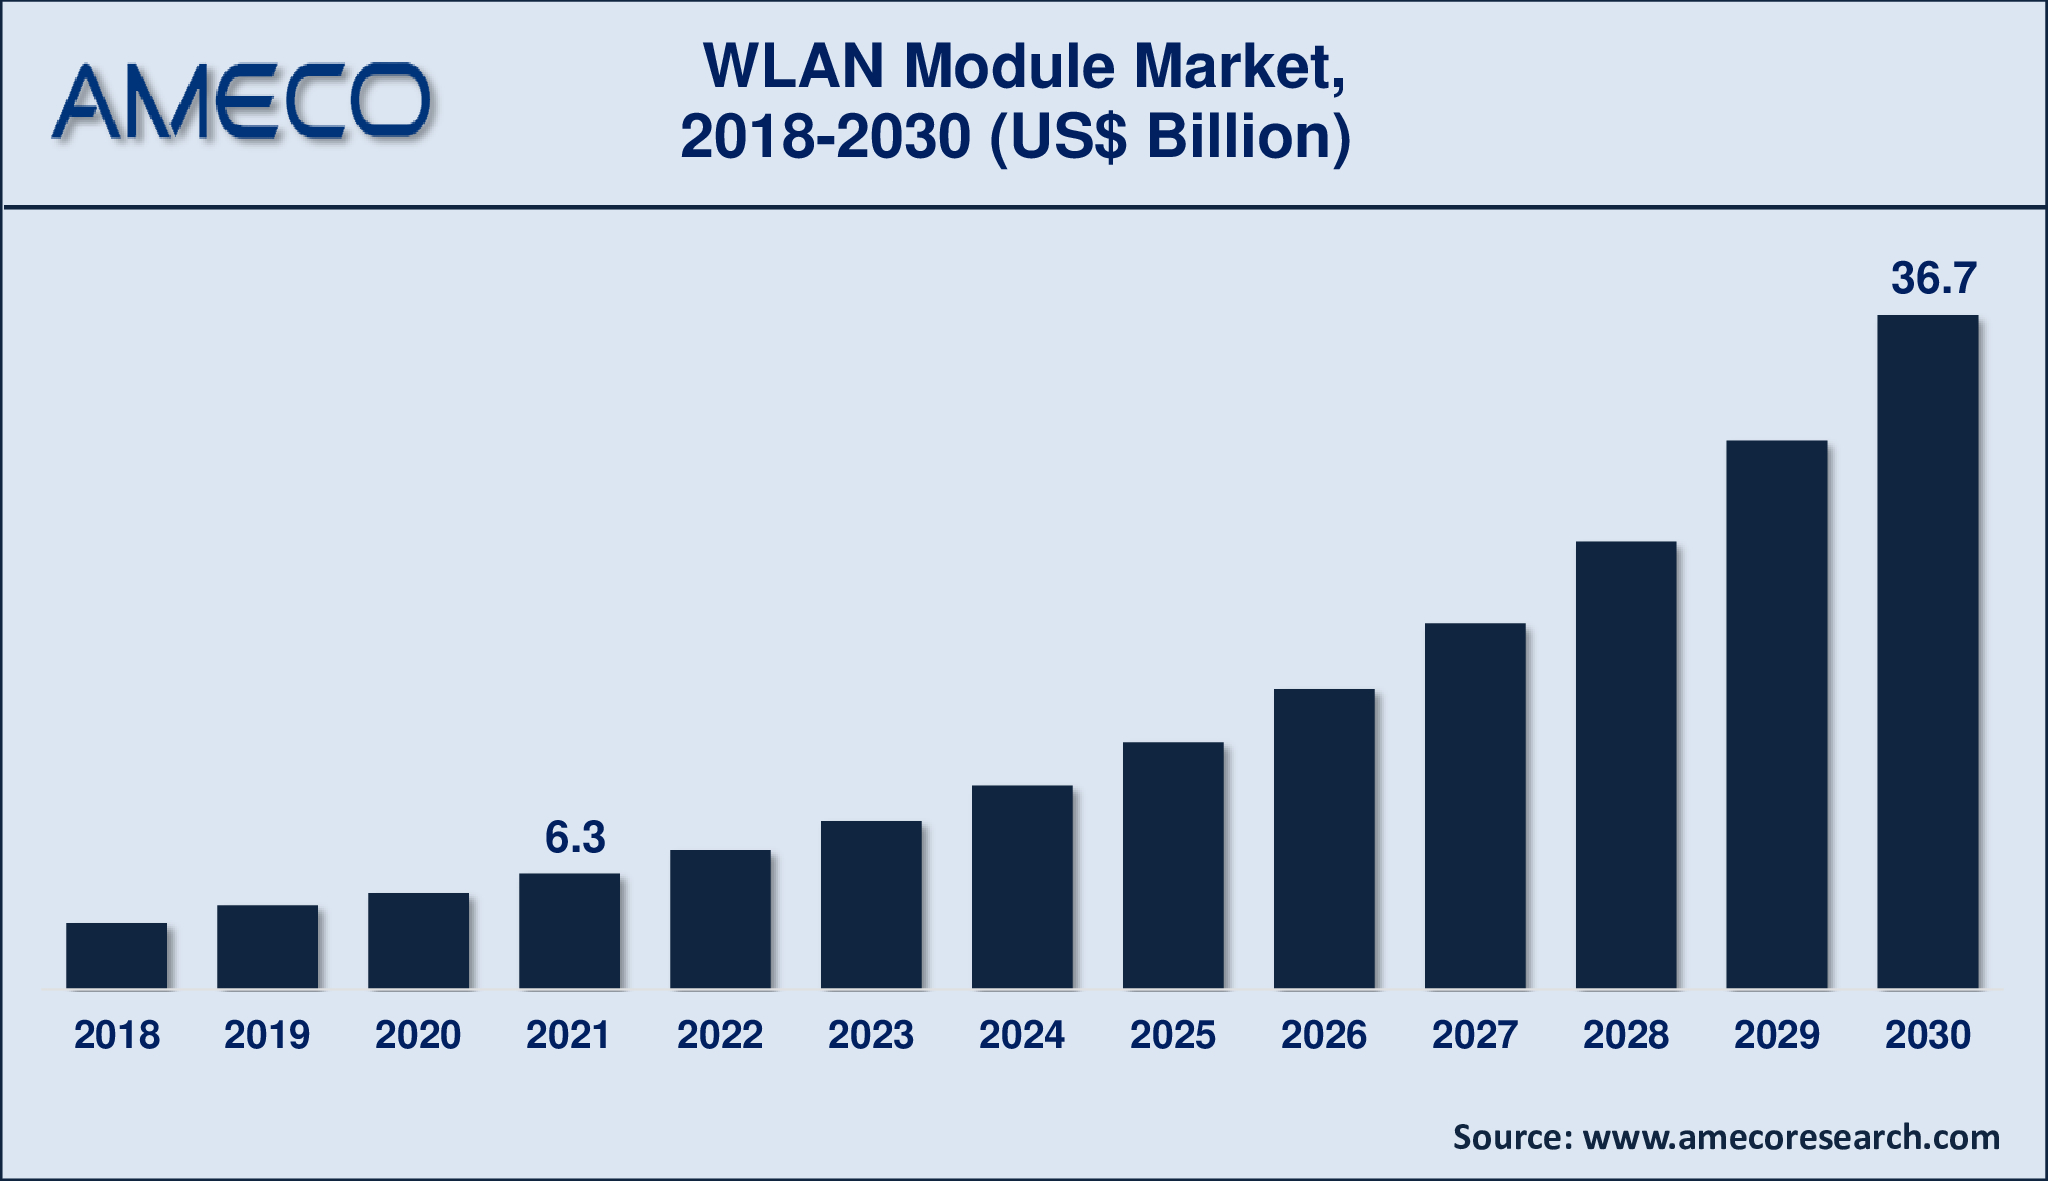 WLAN Module Market Size